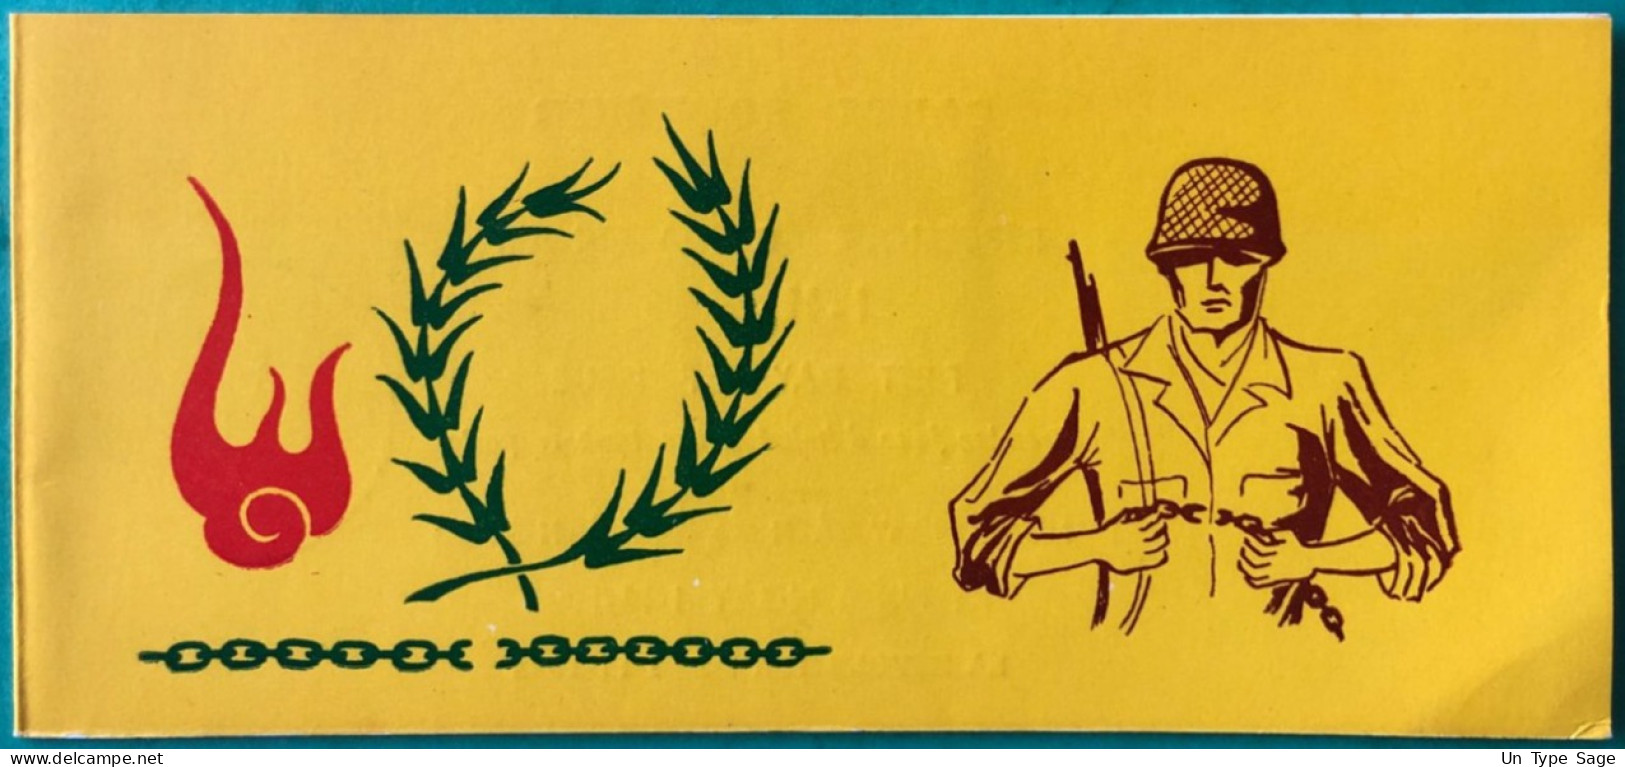 Viet Nam - Carte Souvenir, La Révolution De 1963 - (B2306) - Viêt-Nam